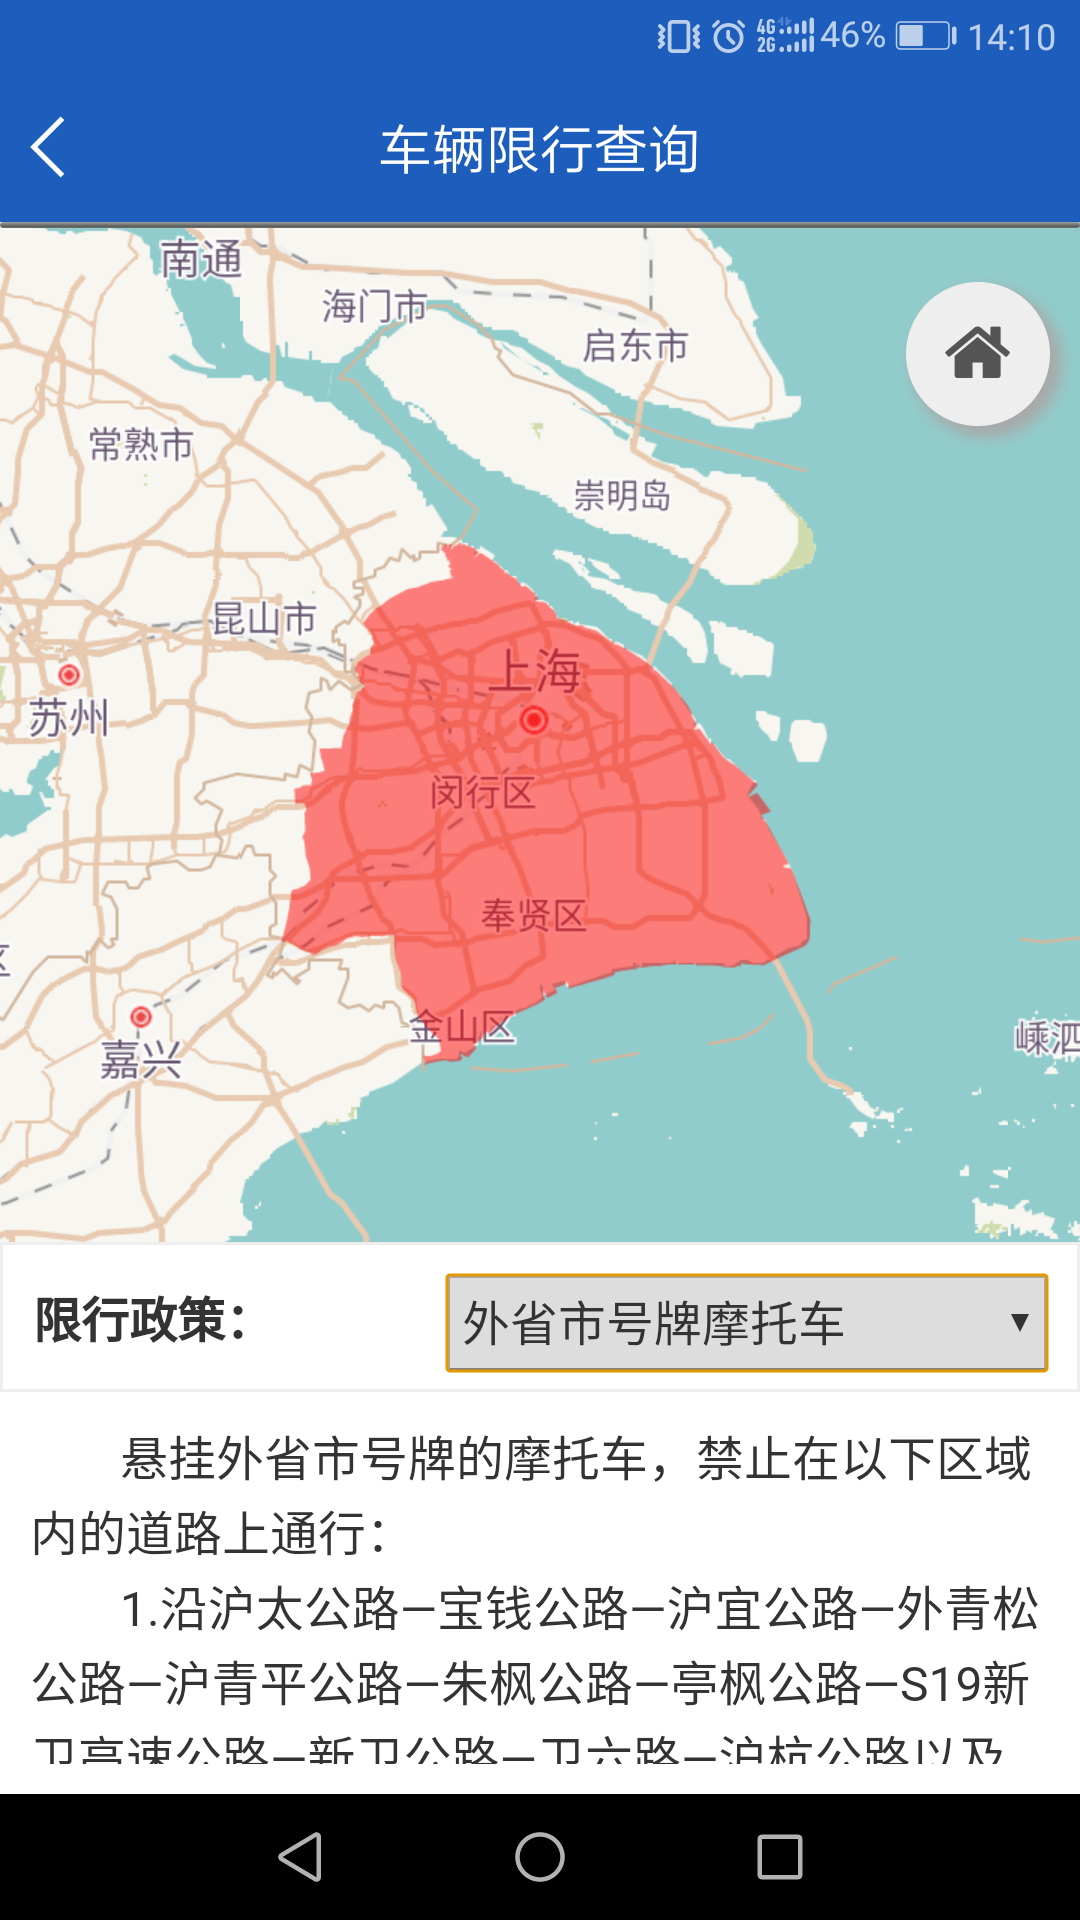 上海限行区域图图片